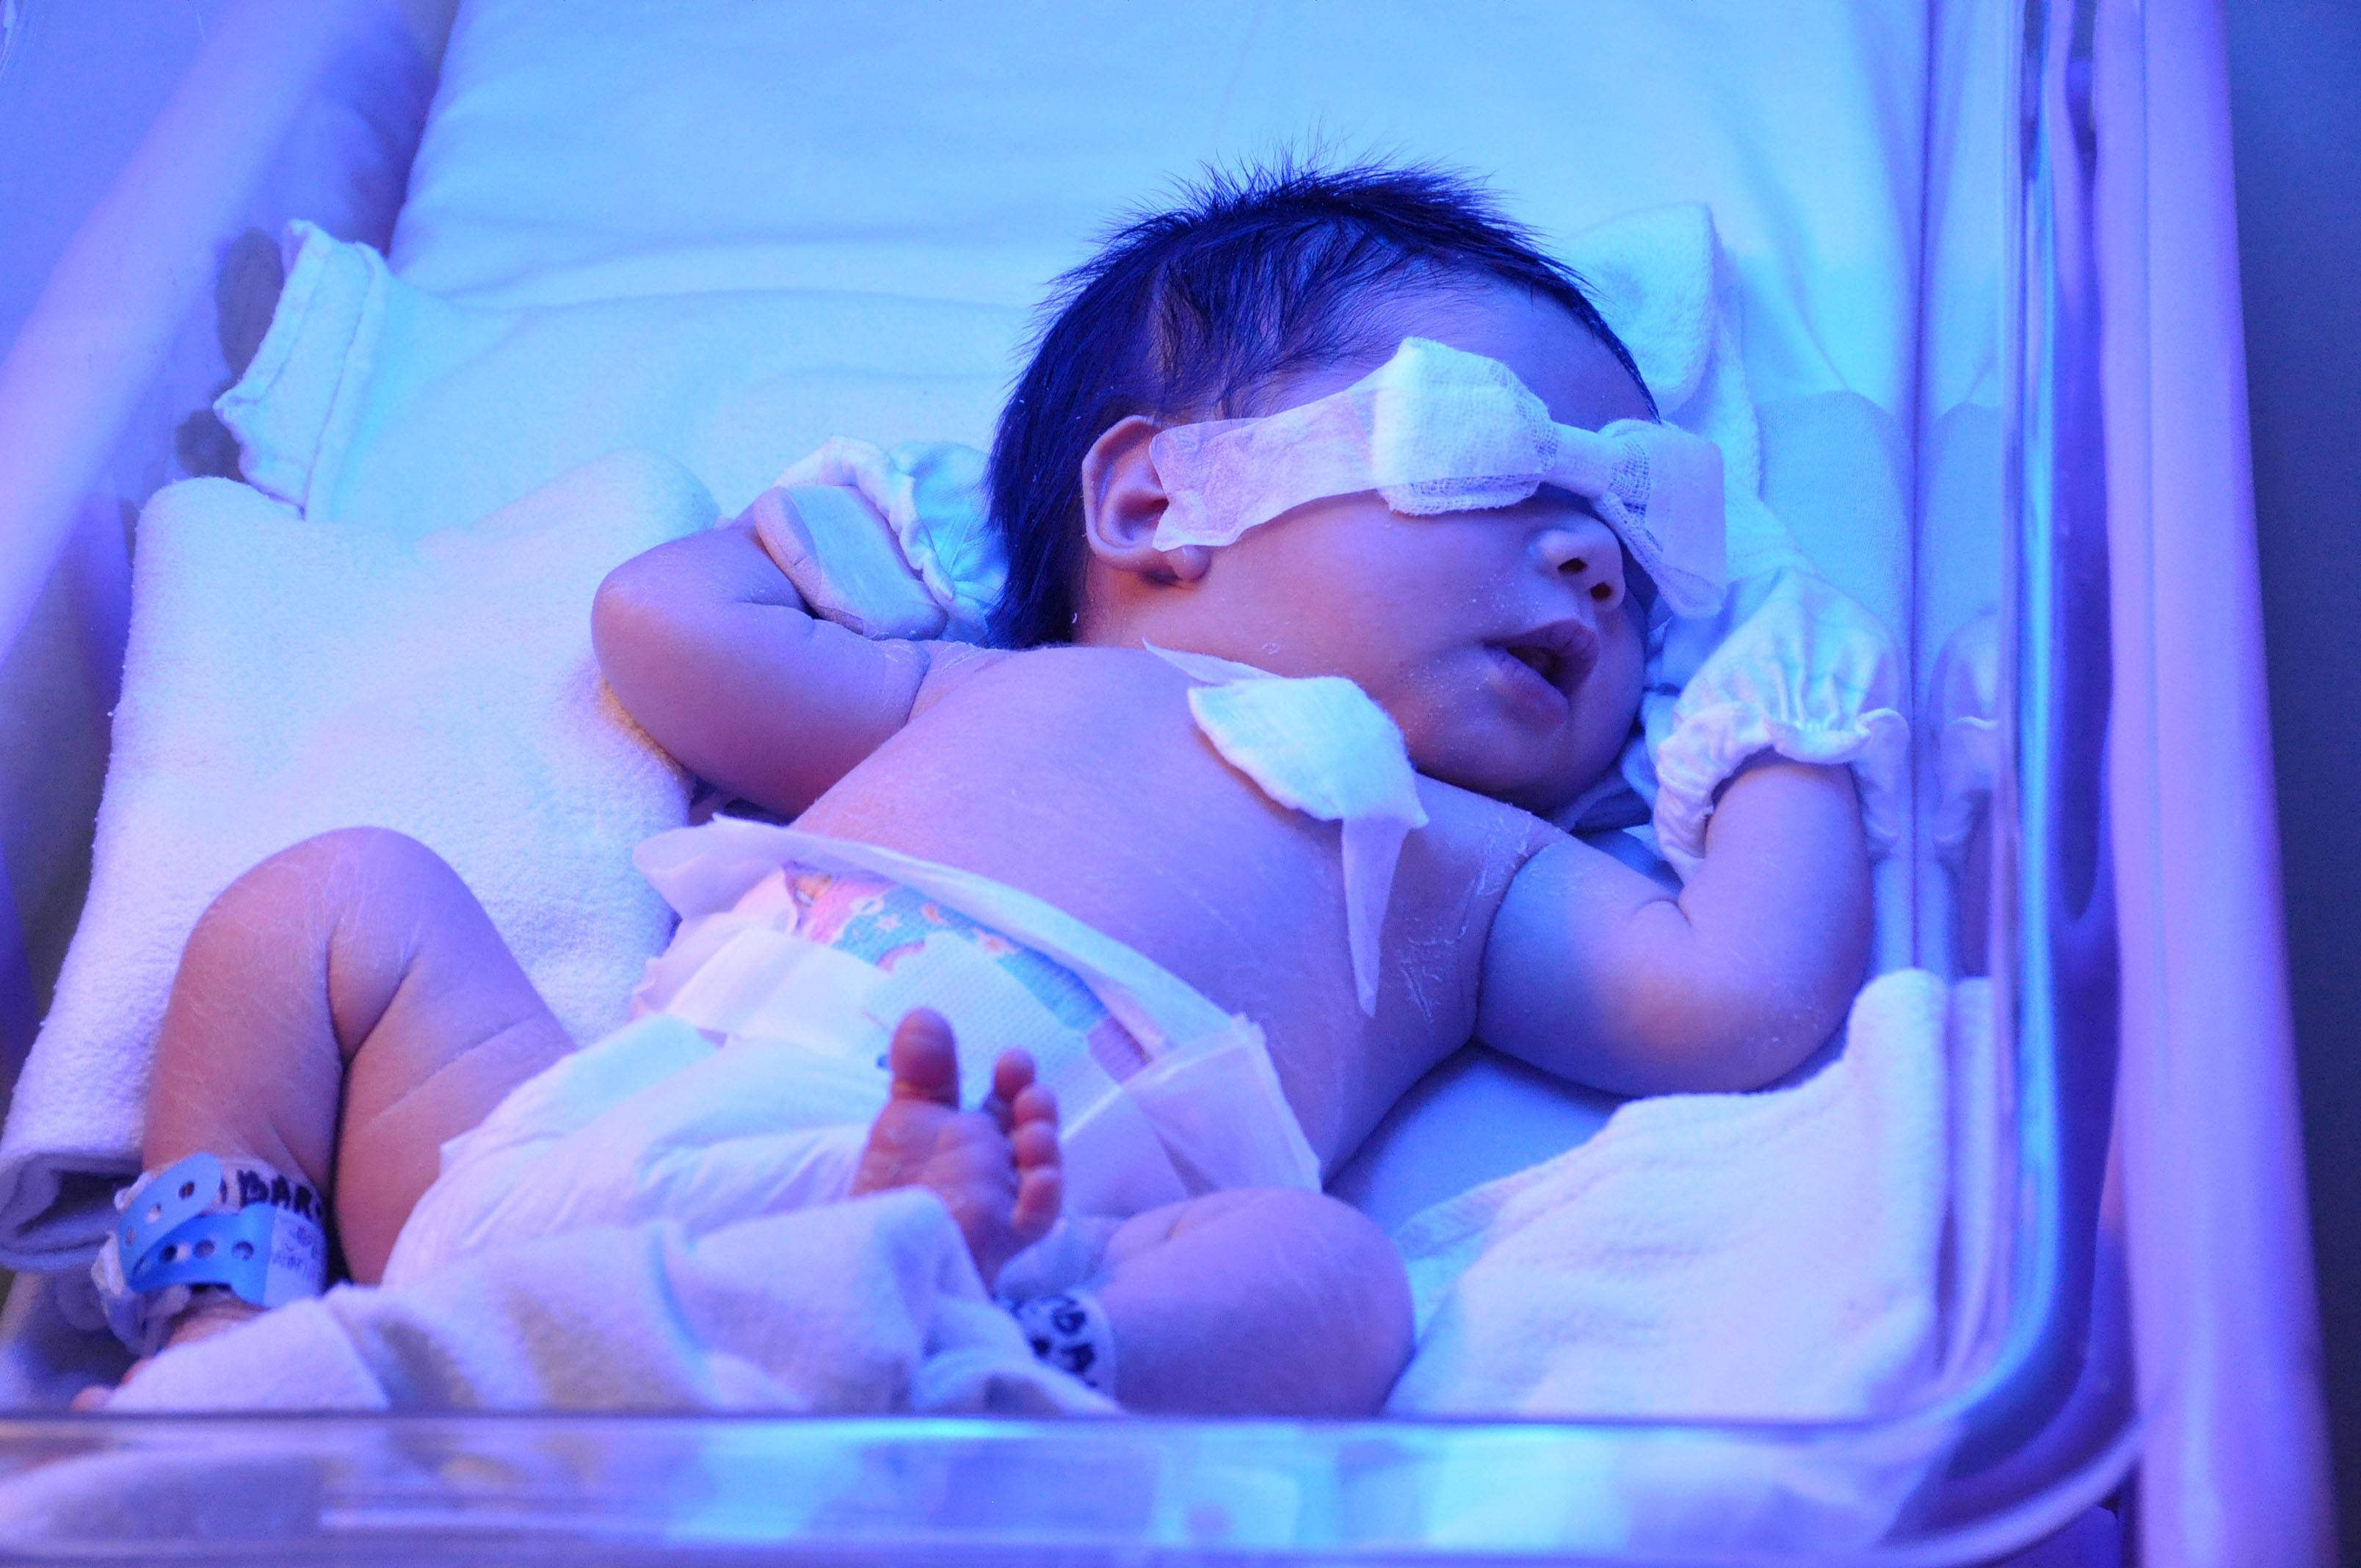 К новорожденному приходит врач. Желтушка у новорожденных фототерапия. Гипербилирубинемия желтуха новорожденных. Новорожденных под лампой отжельухи. Лампа для новорожденных от желтушки в роддоме.